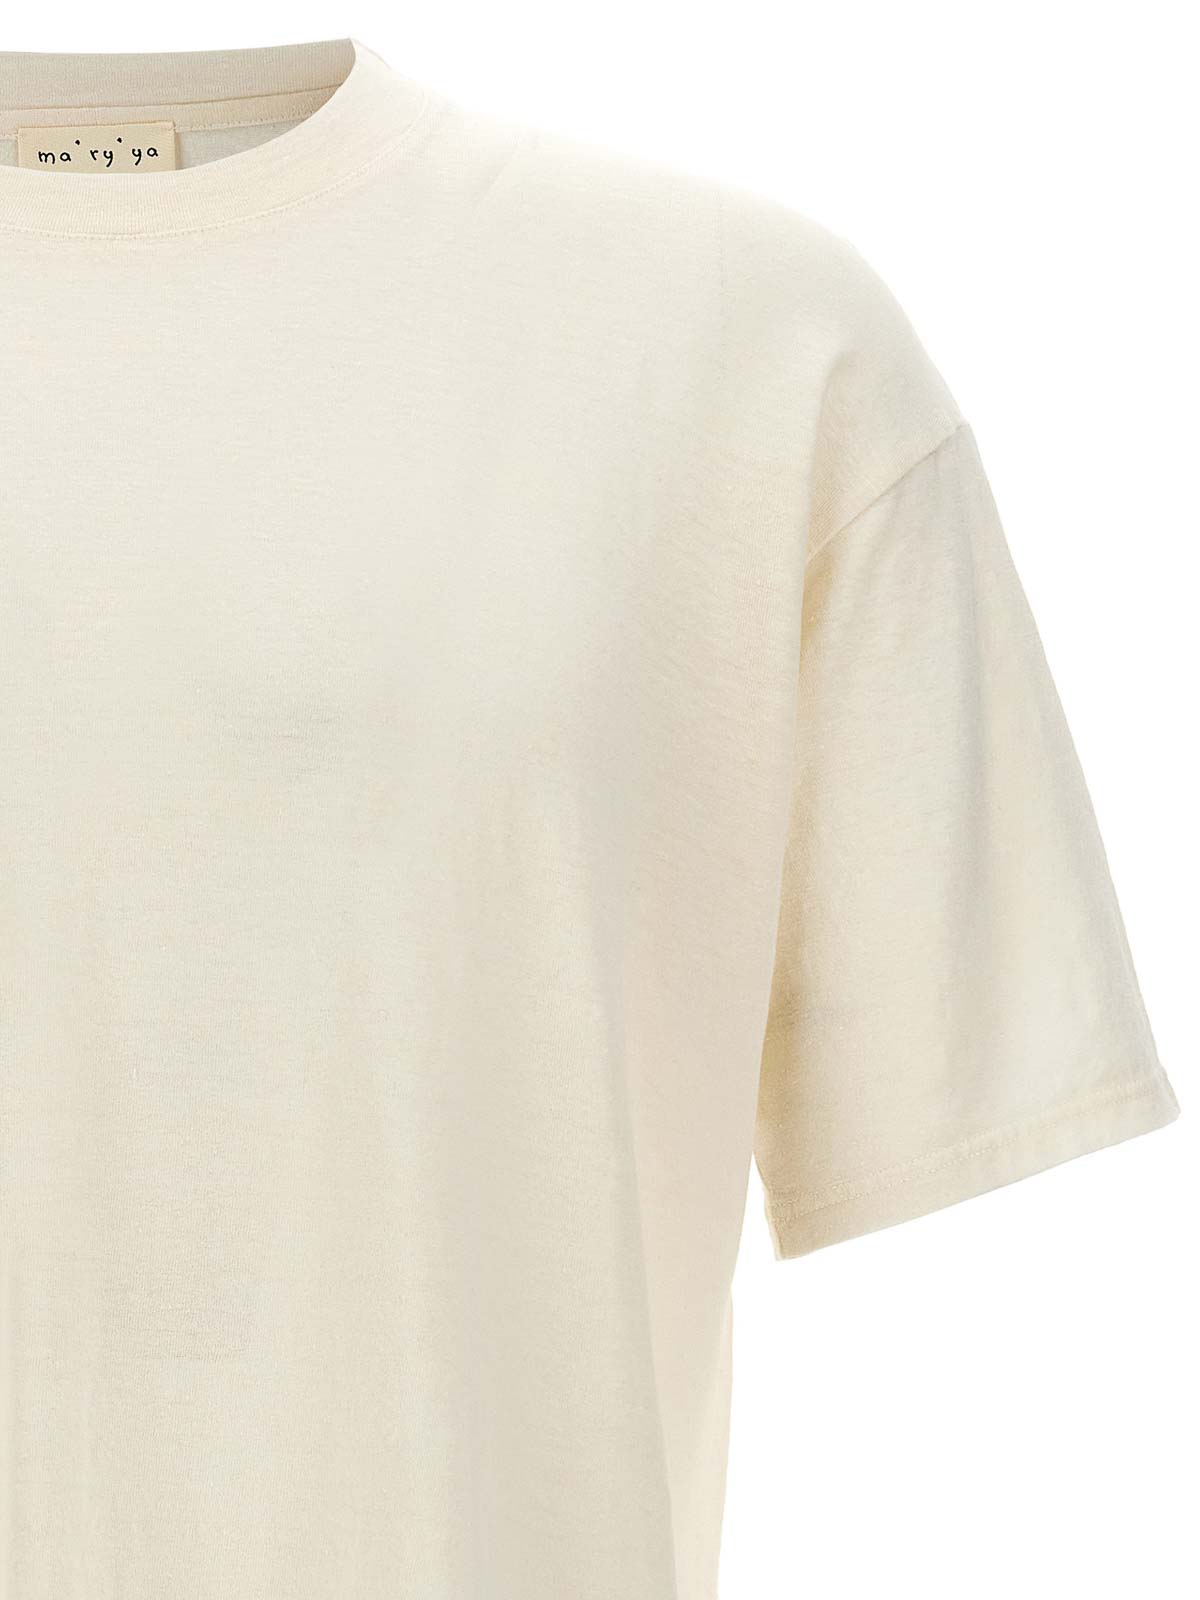 Shop Ma'ry'ya Camiseta - Blanco In White